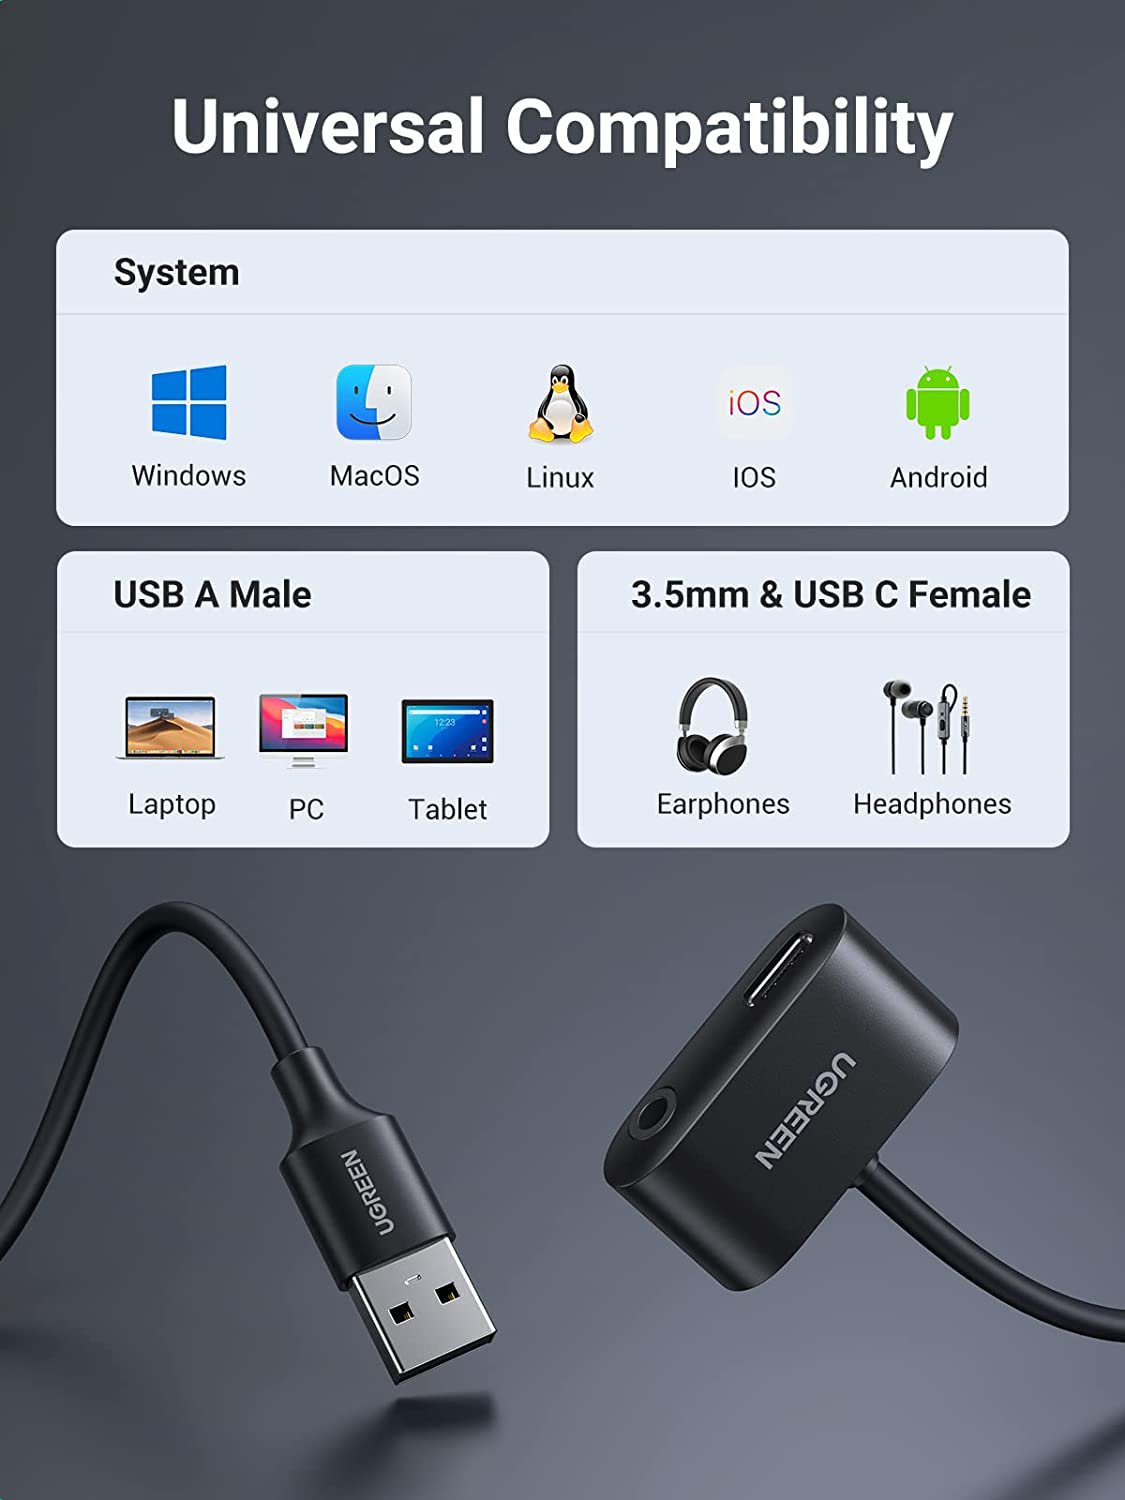 Cáp chuyển USB sang 3.5mm và USB C Ugreen 80897